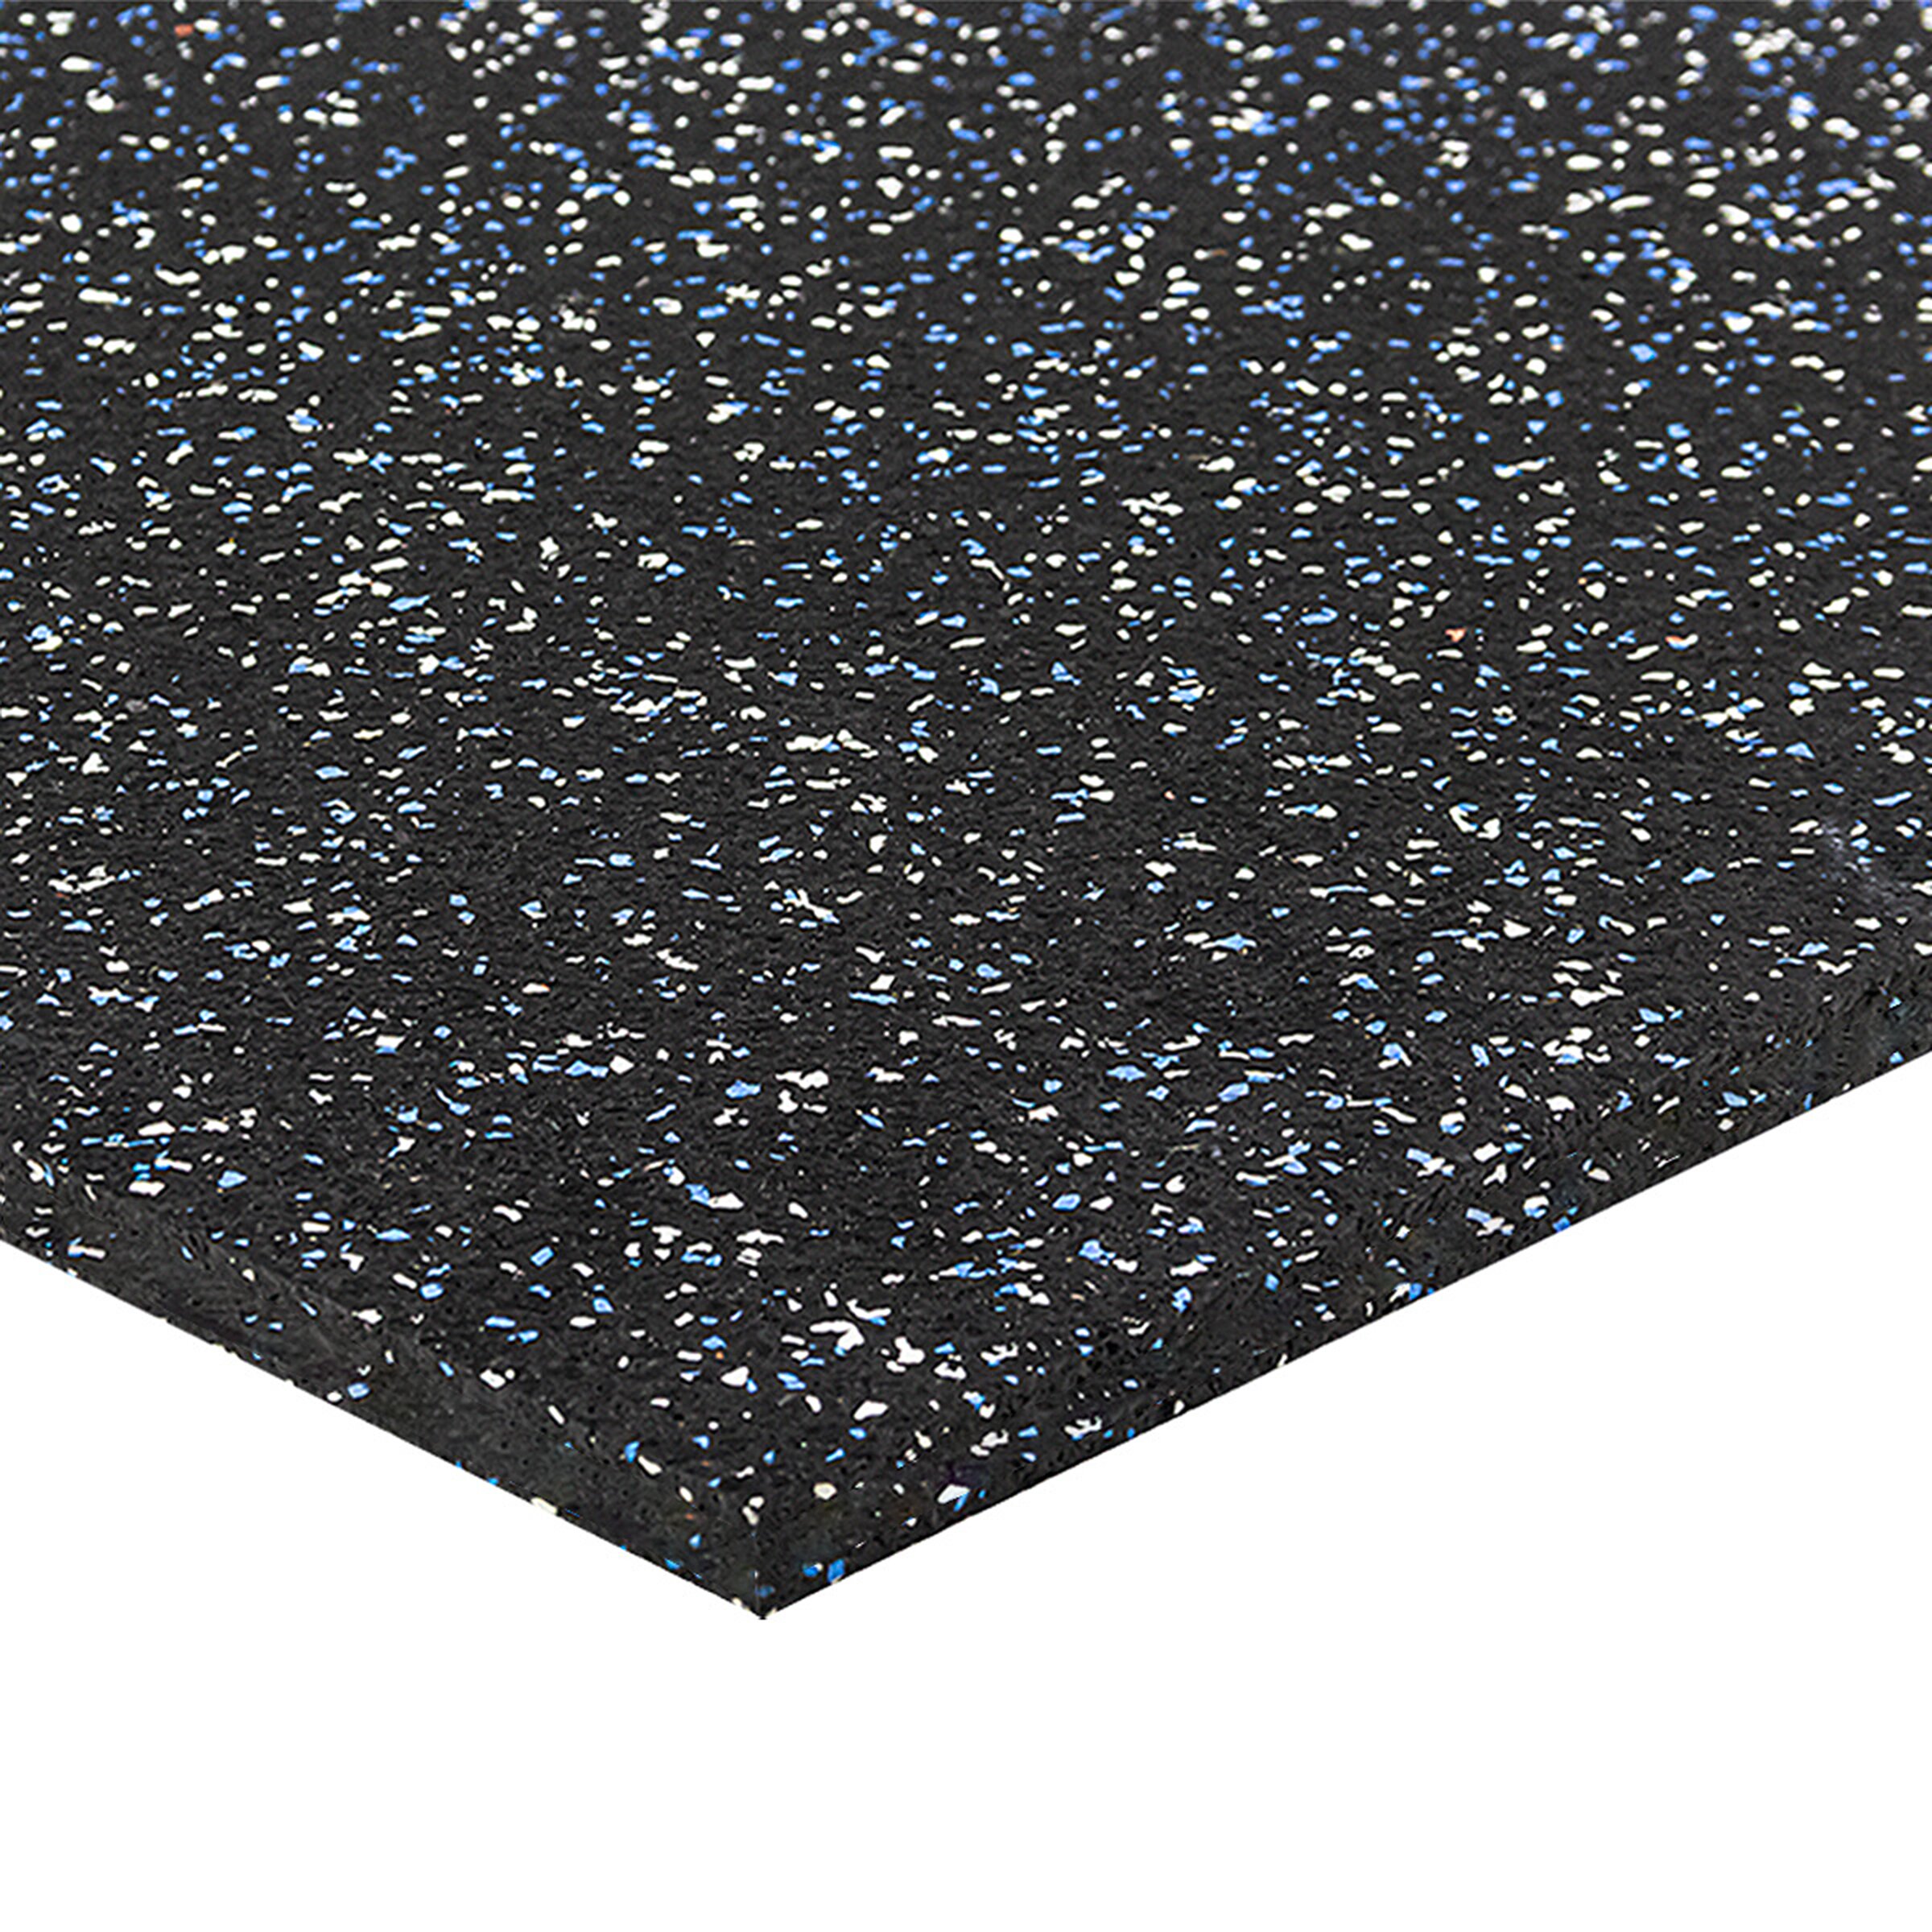 Černo-bílo-modrá gumová puzzle modulová dlažba FLOMA SF1050 FitFlo - délka 50 cm, šířka 50 cm, výška 1,6 cm